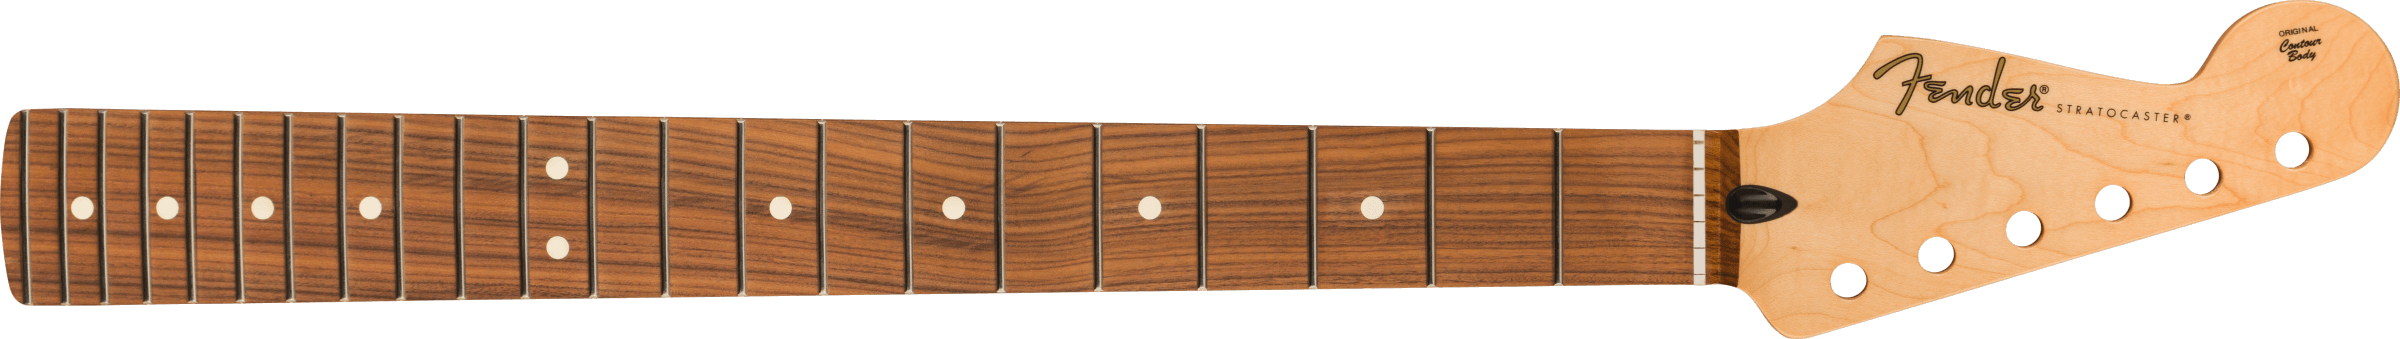 Hlavní obrázek Náhradní díly FENDER Player Series Stratocaster Reverse Headstock Neck, 22 Medium Jumbo Frets, Pau Ferro, 9.5”, Modern ”C”